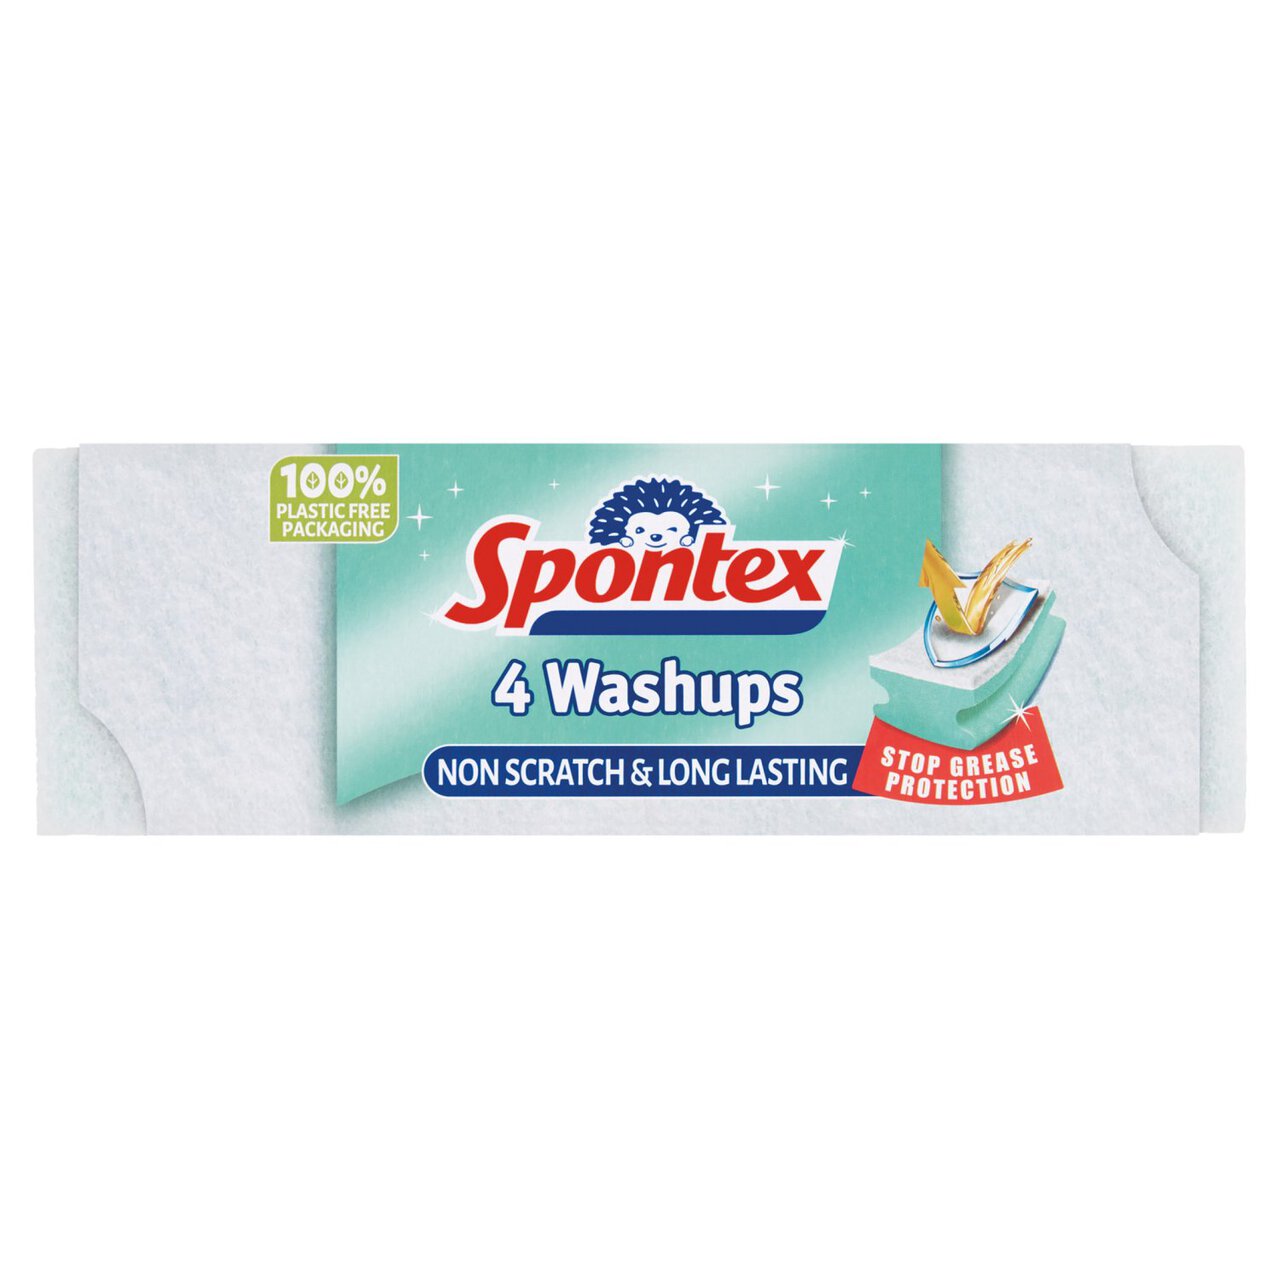 Spontex Non Scratch Washups 4 per pack